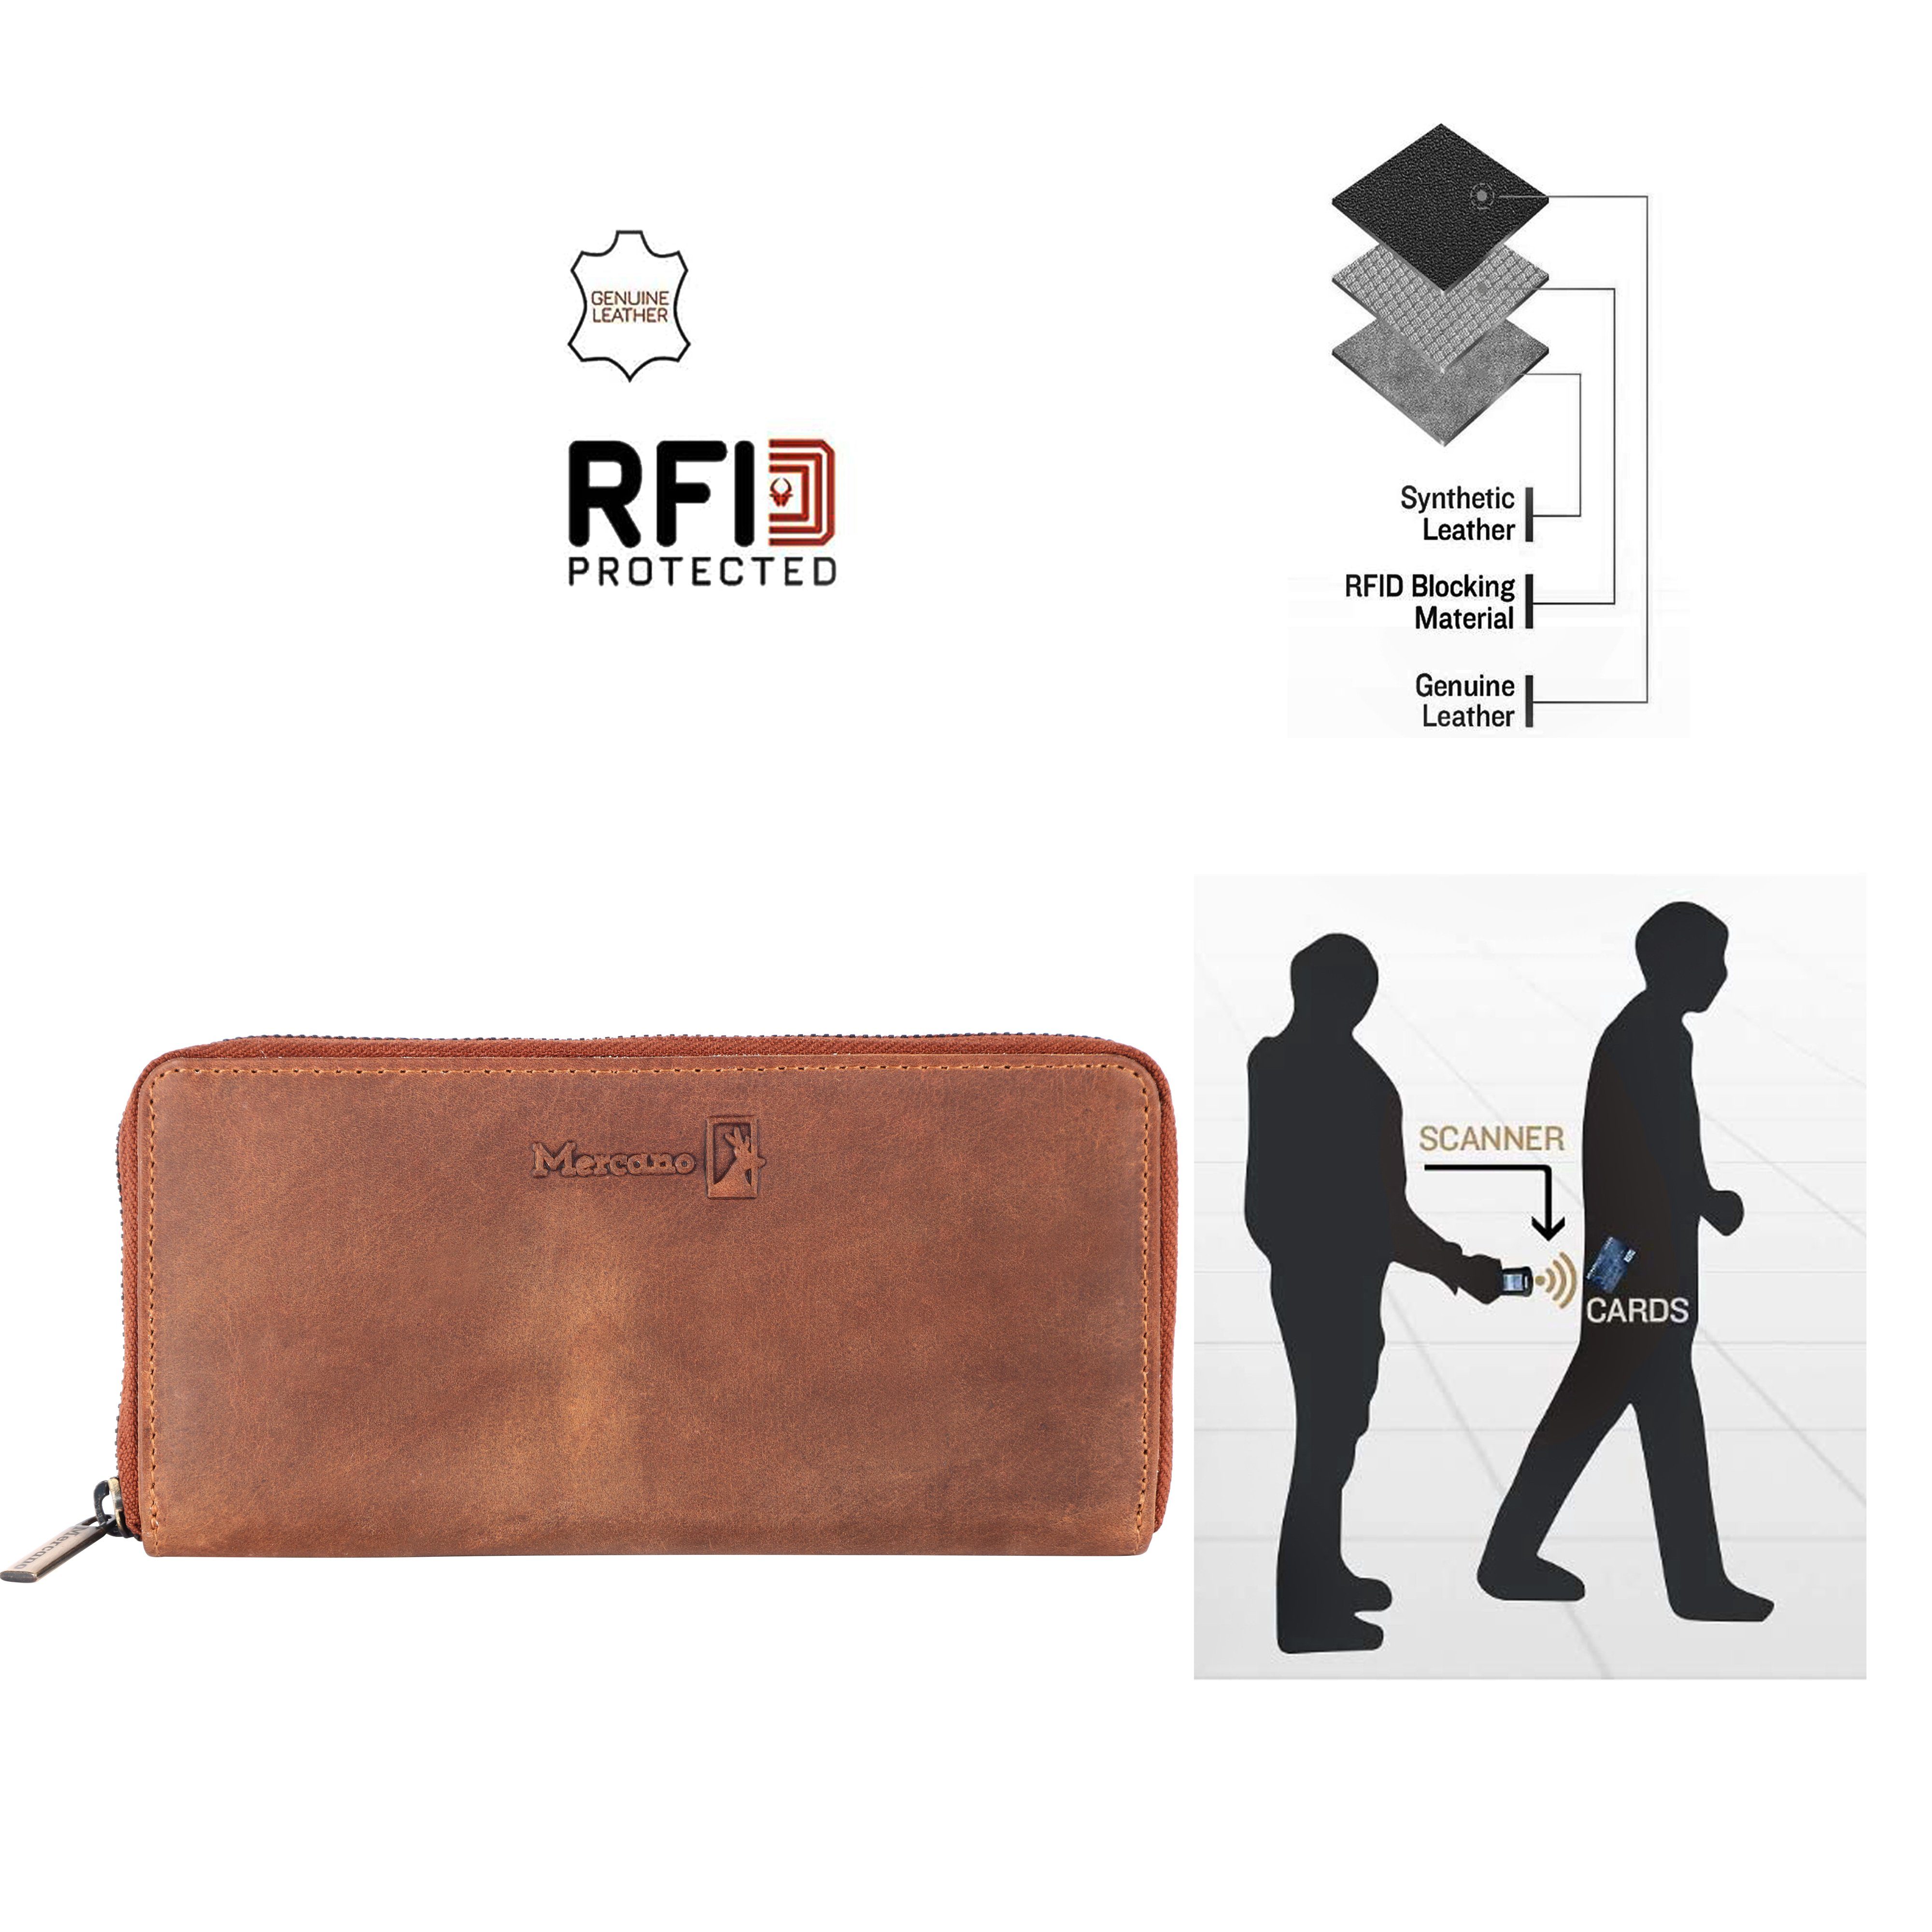 Geschenkbox Vintage aus RFID-Schutz integrierter Geldbörse inkl. für Mercano & 100% Damen, Leder,